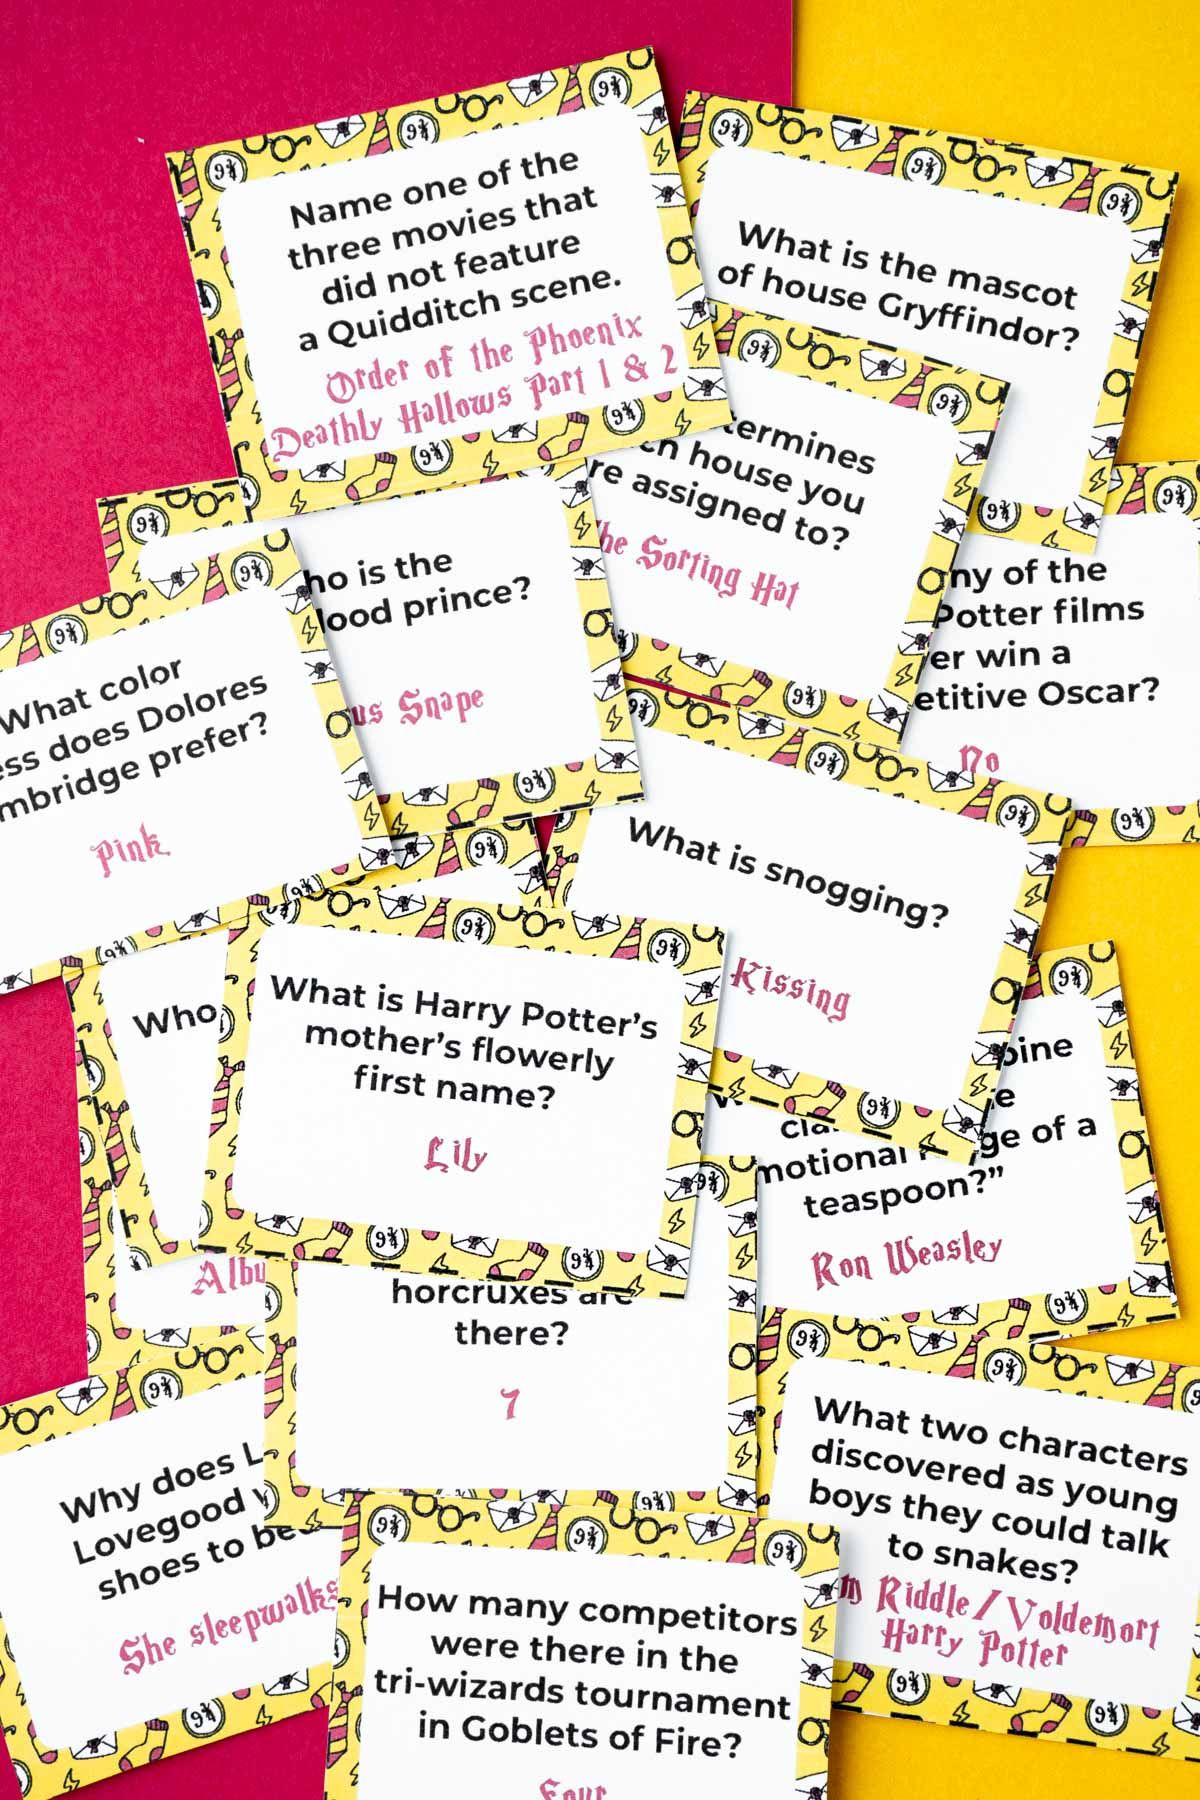 Купчина жълти картички с любопитни факти за Хари Потър върху парче жълта и червена хартия